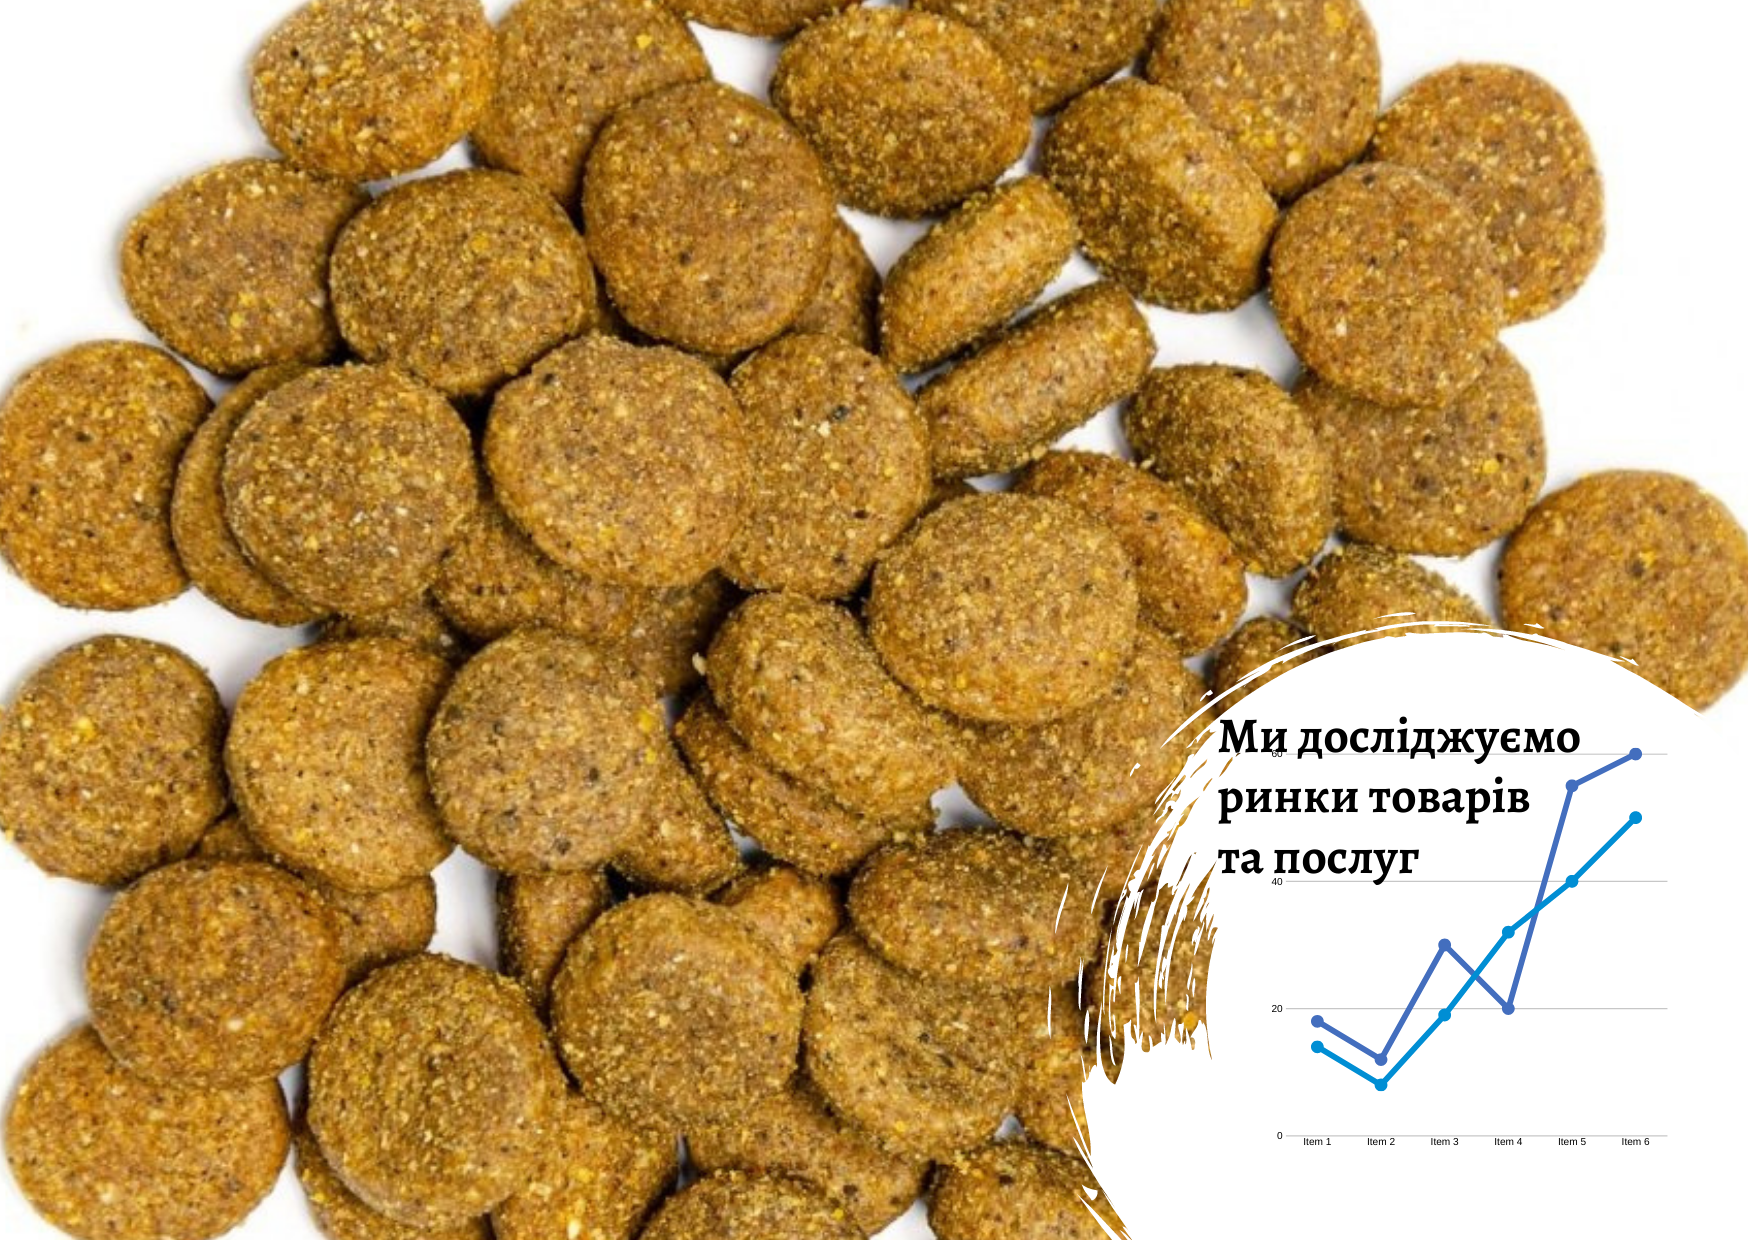 Рынок сухих кормов для домашних животных в Украине